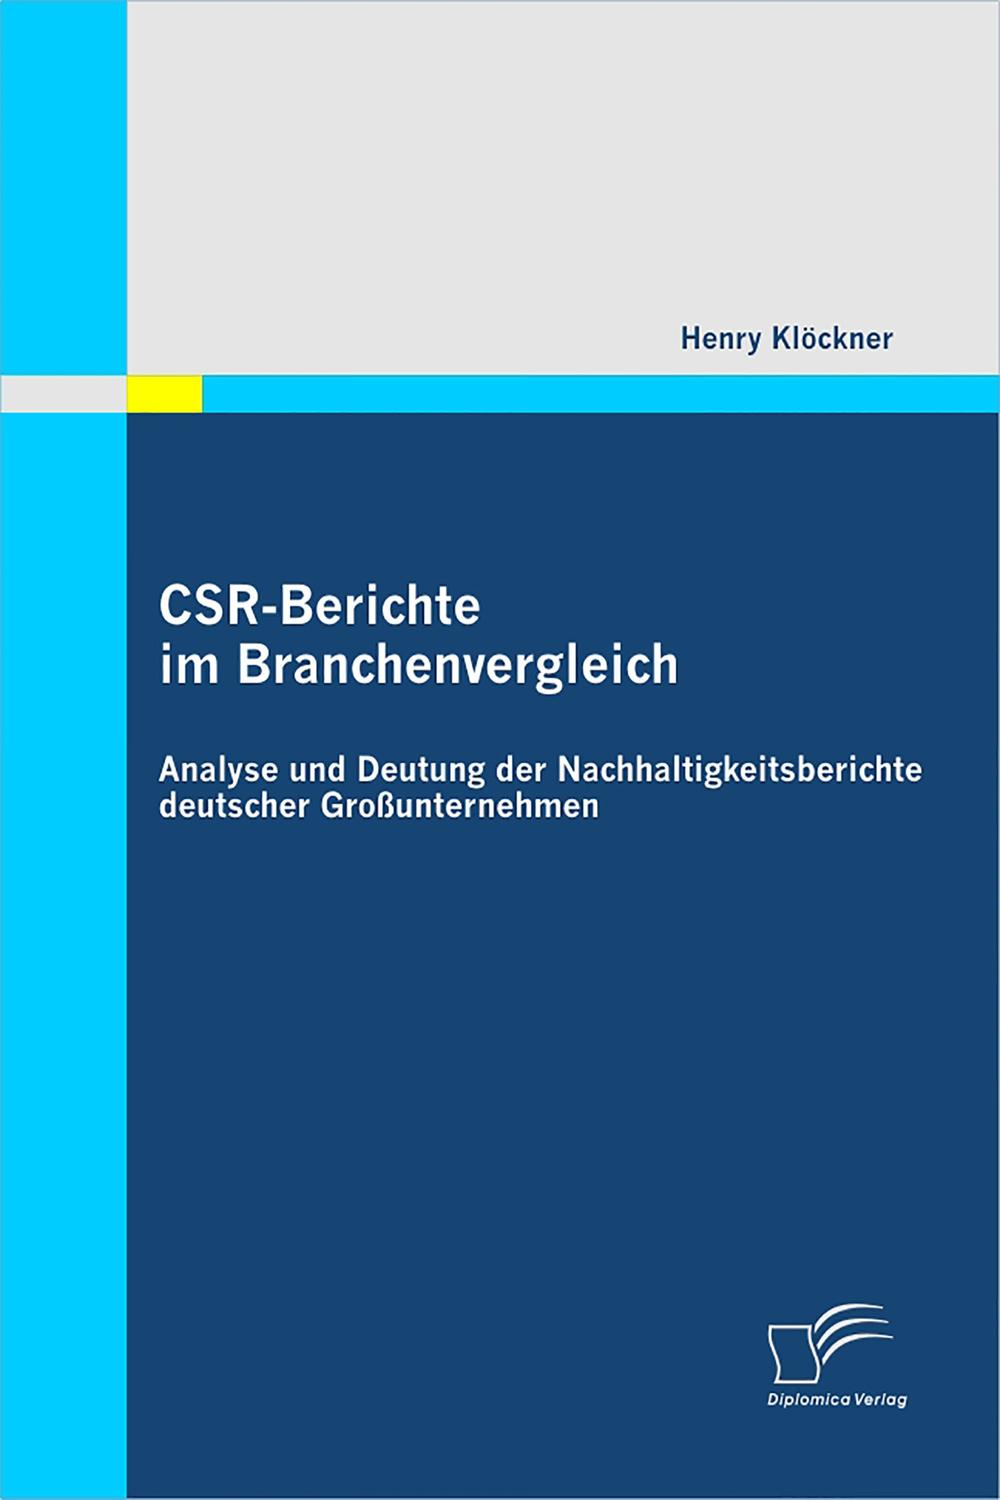 CSR-Berichte im Branchenvergleich: Analyse und Deutung der Nachhaltigkeitsberichte deutscher Großunternehmen - Henry Klöckner